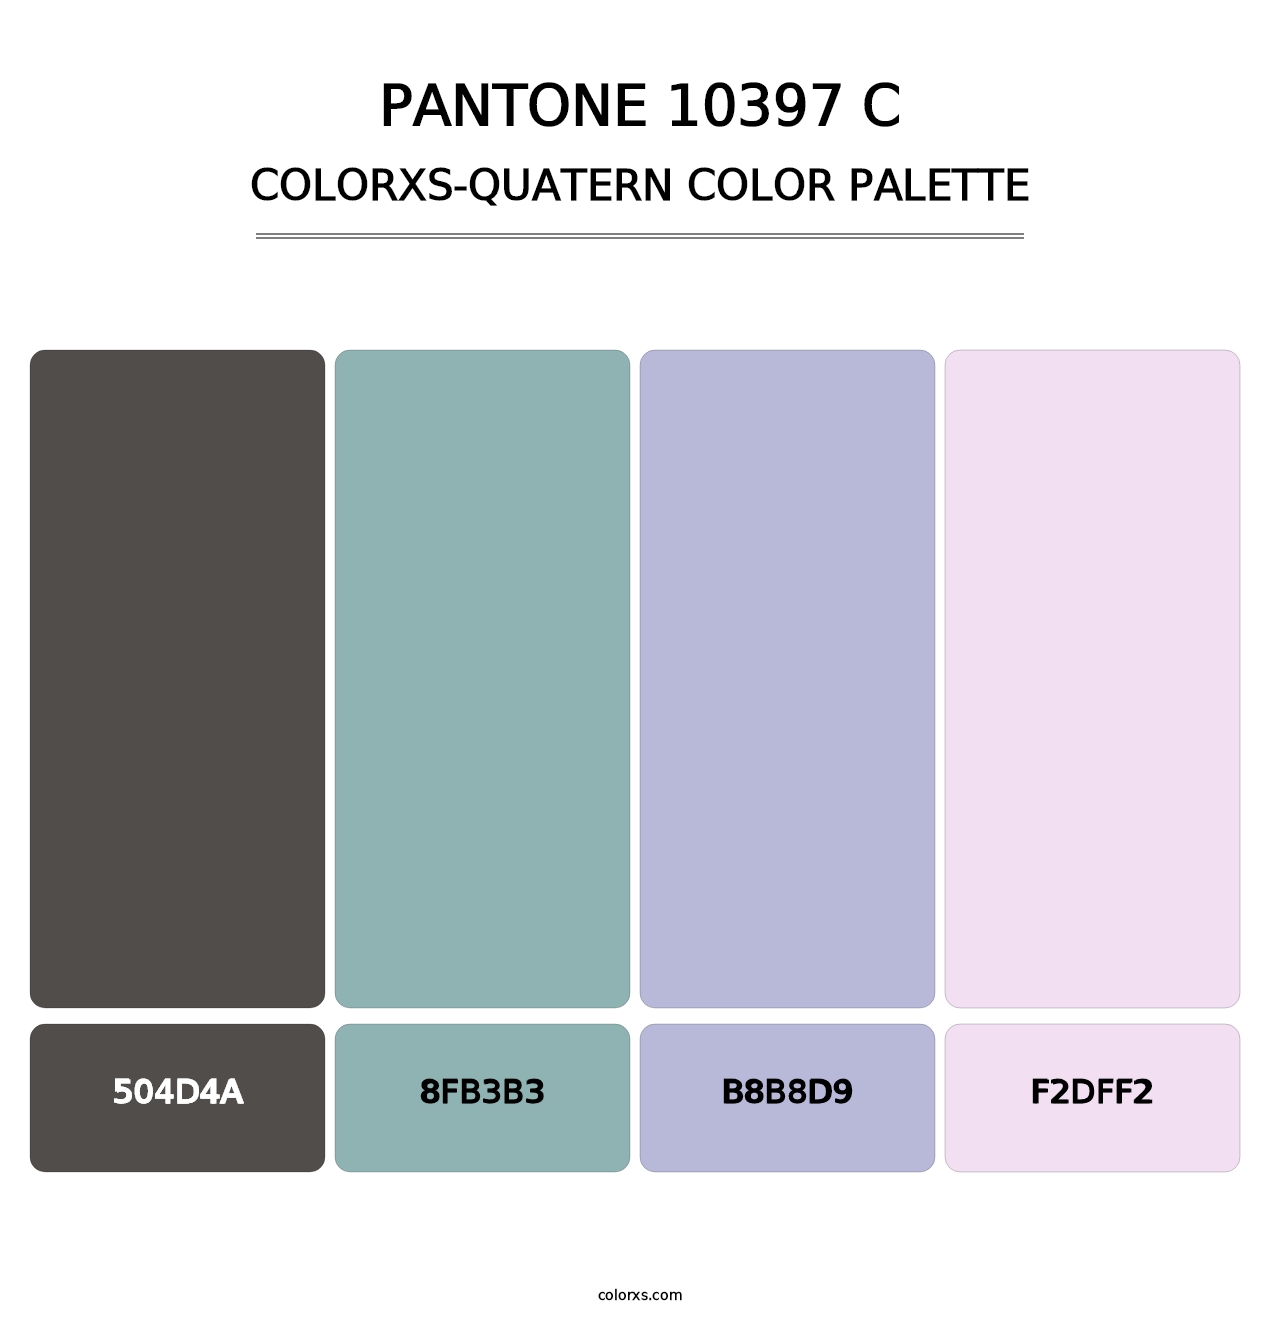 PANTONE 10397 C - Colorxs Quatern Palette